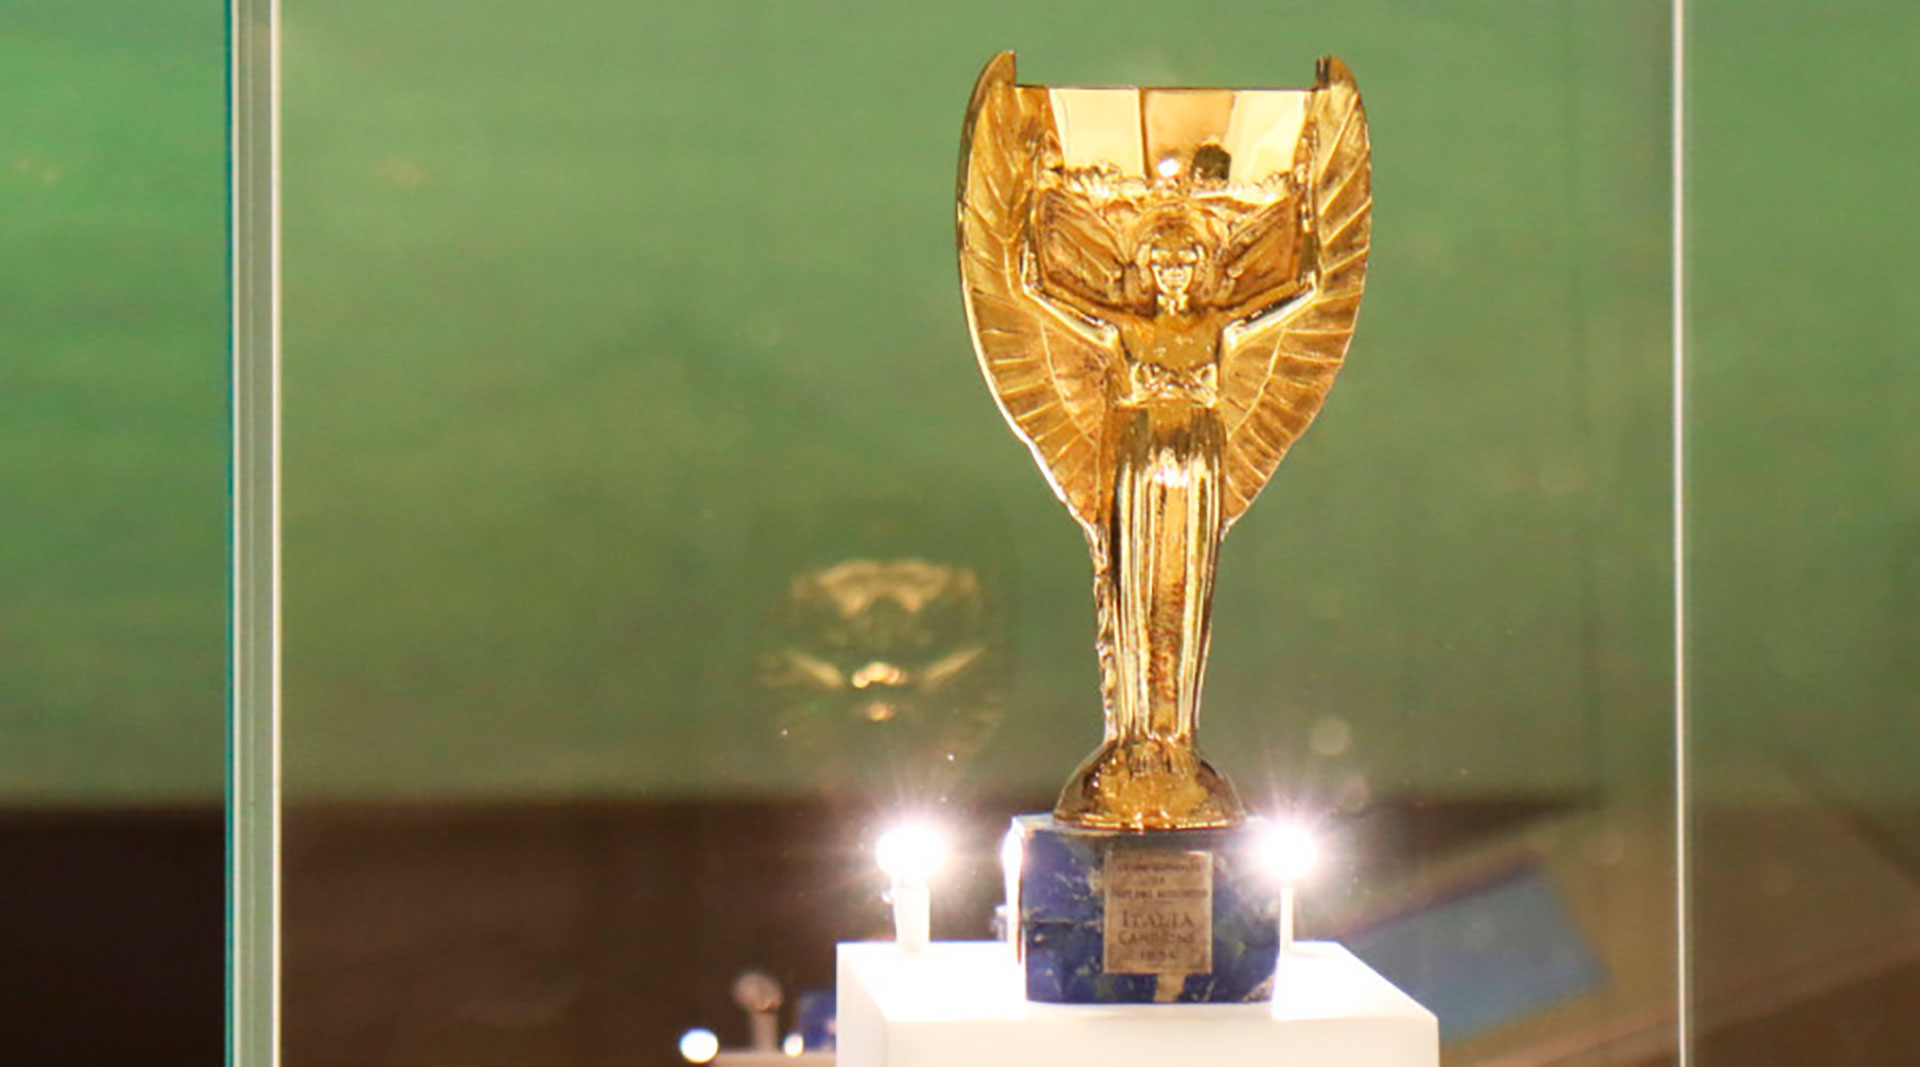 Mundial 2022 Qatar: Trofeo Jules Rimet: así era la primera copa para los  campeones del Mundial de fútbol